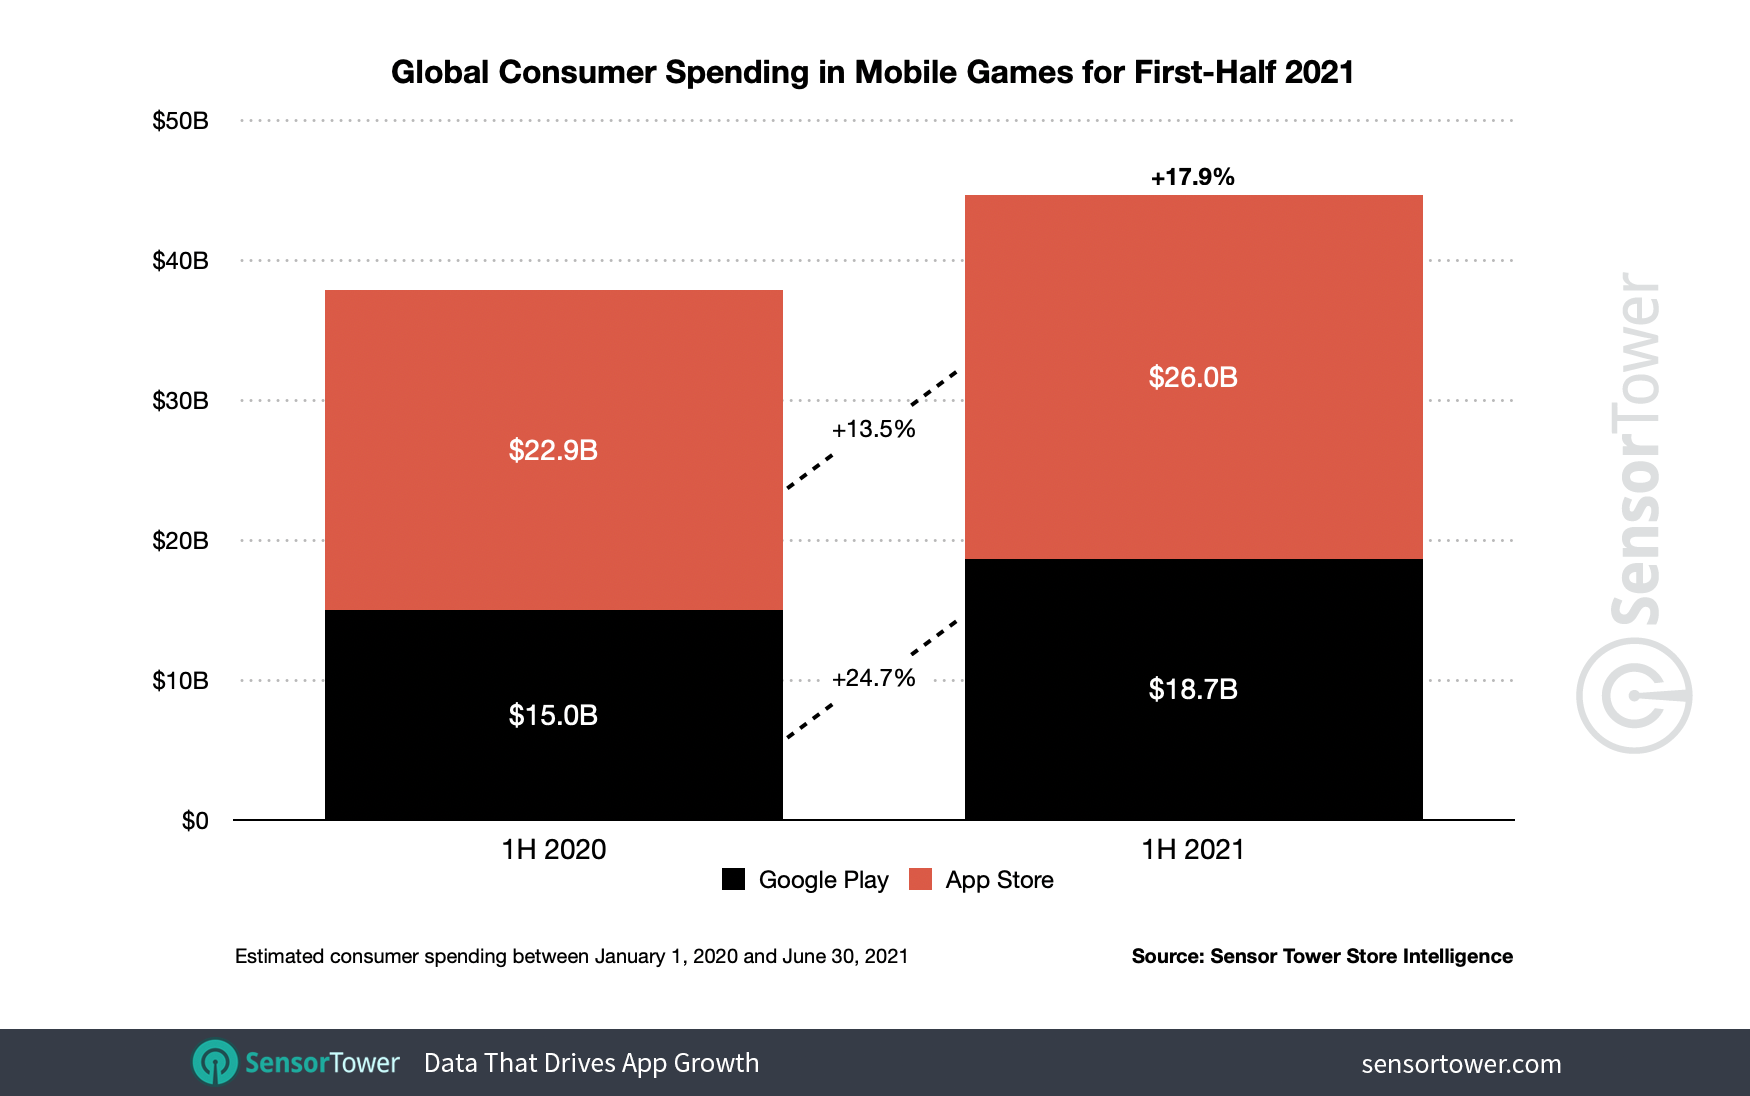 1H 2021 Mobile Game Revenue